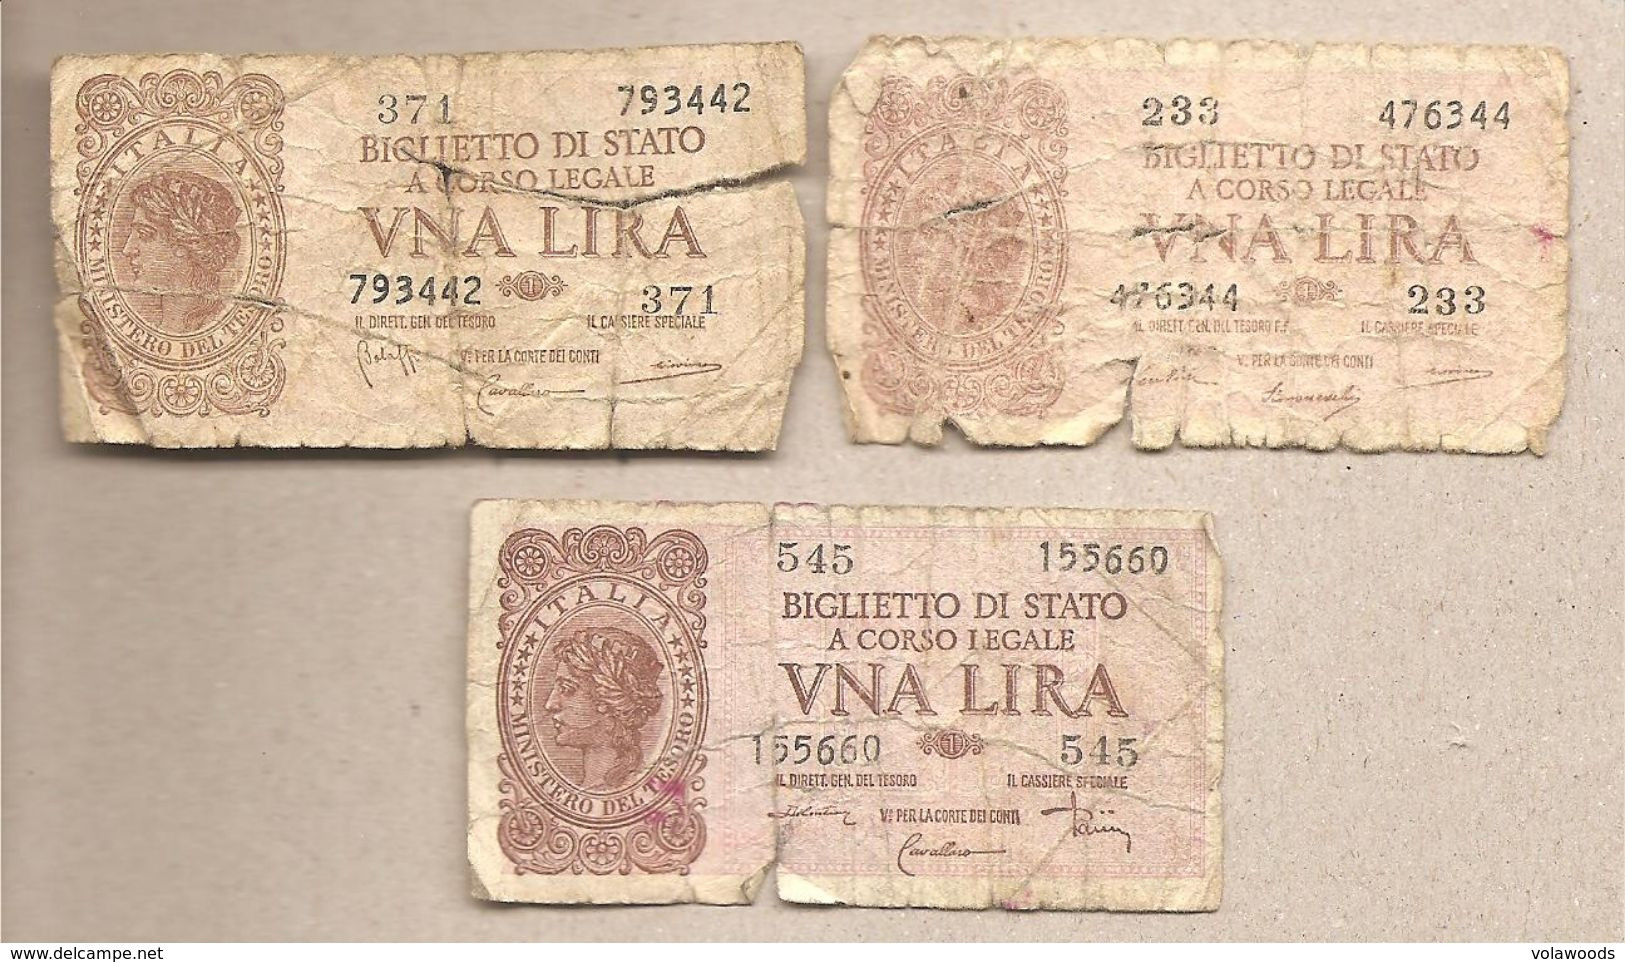 Italia - Banconote Circolate Da 1 Lira "Italia Laureata" Tutti E Tre I Decreti - 1944 - Verzamelingen